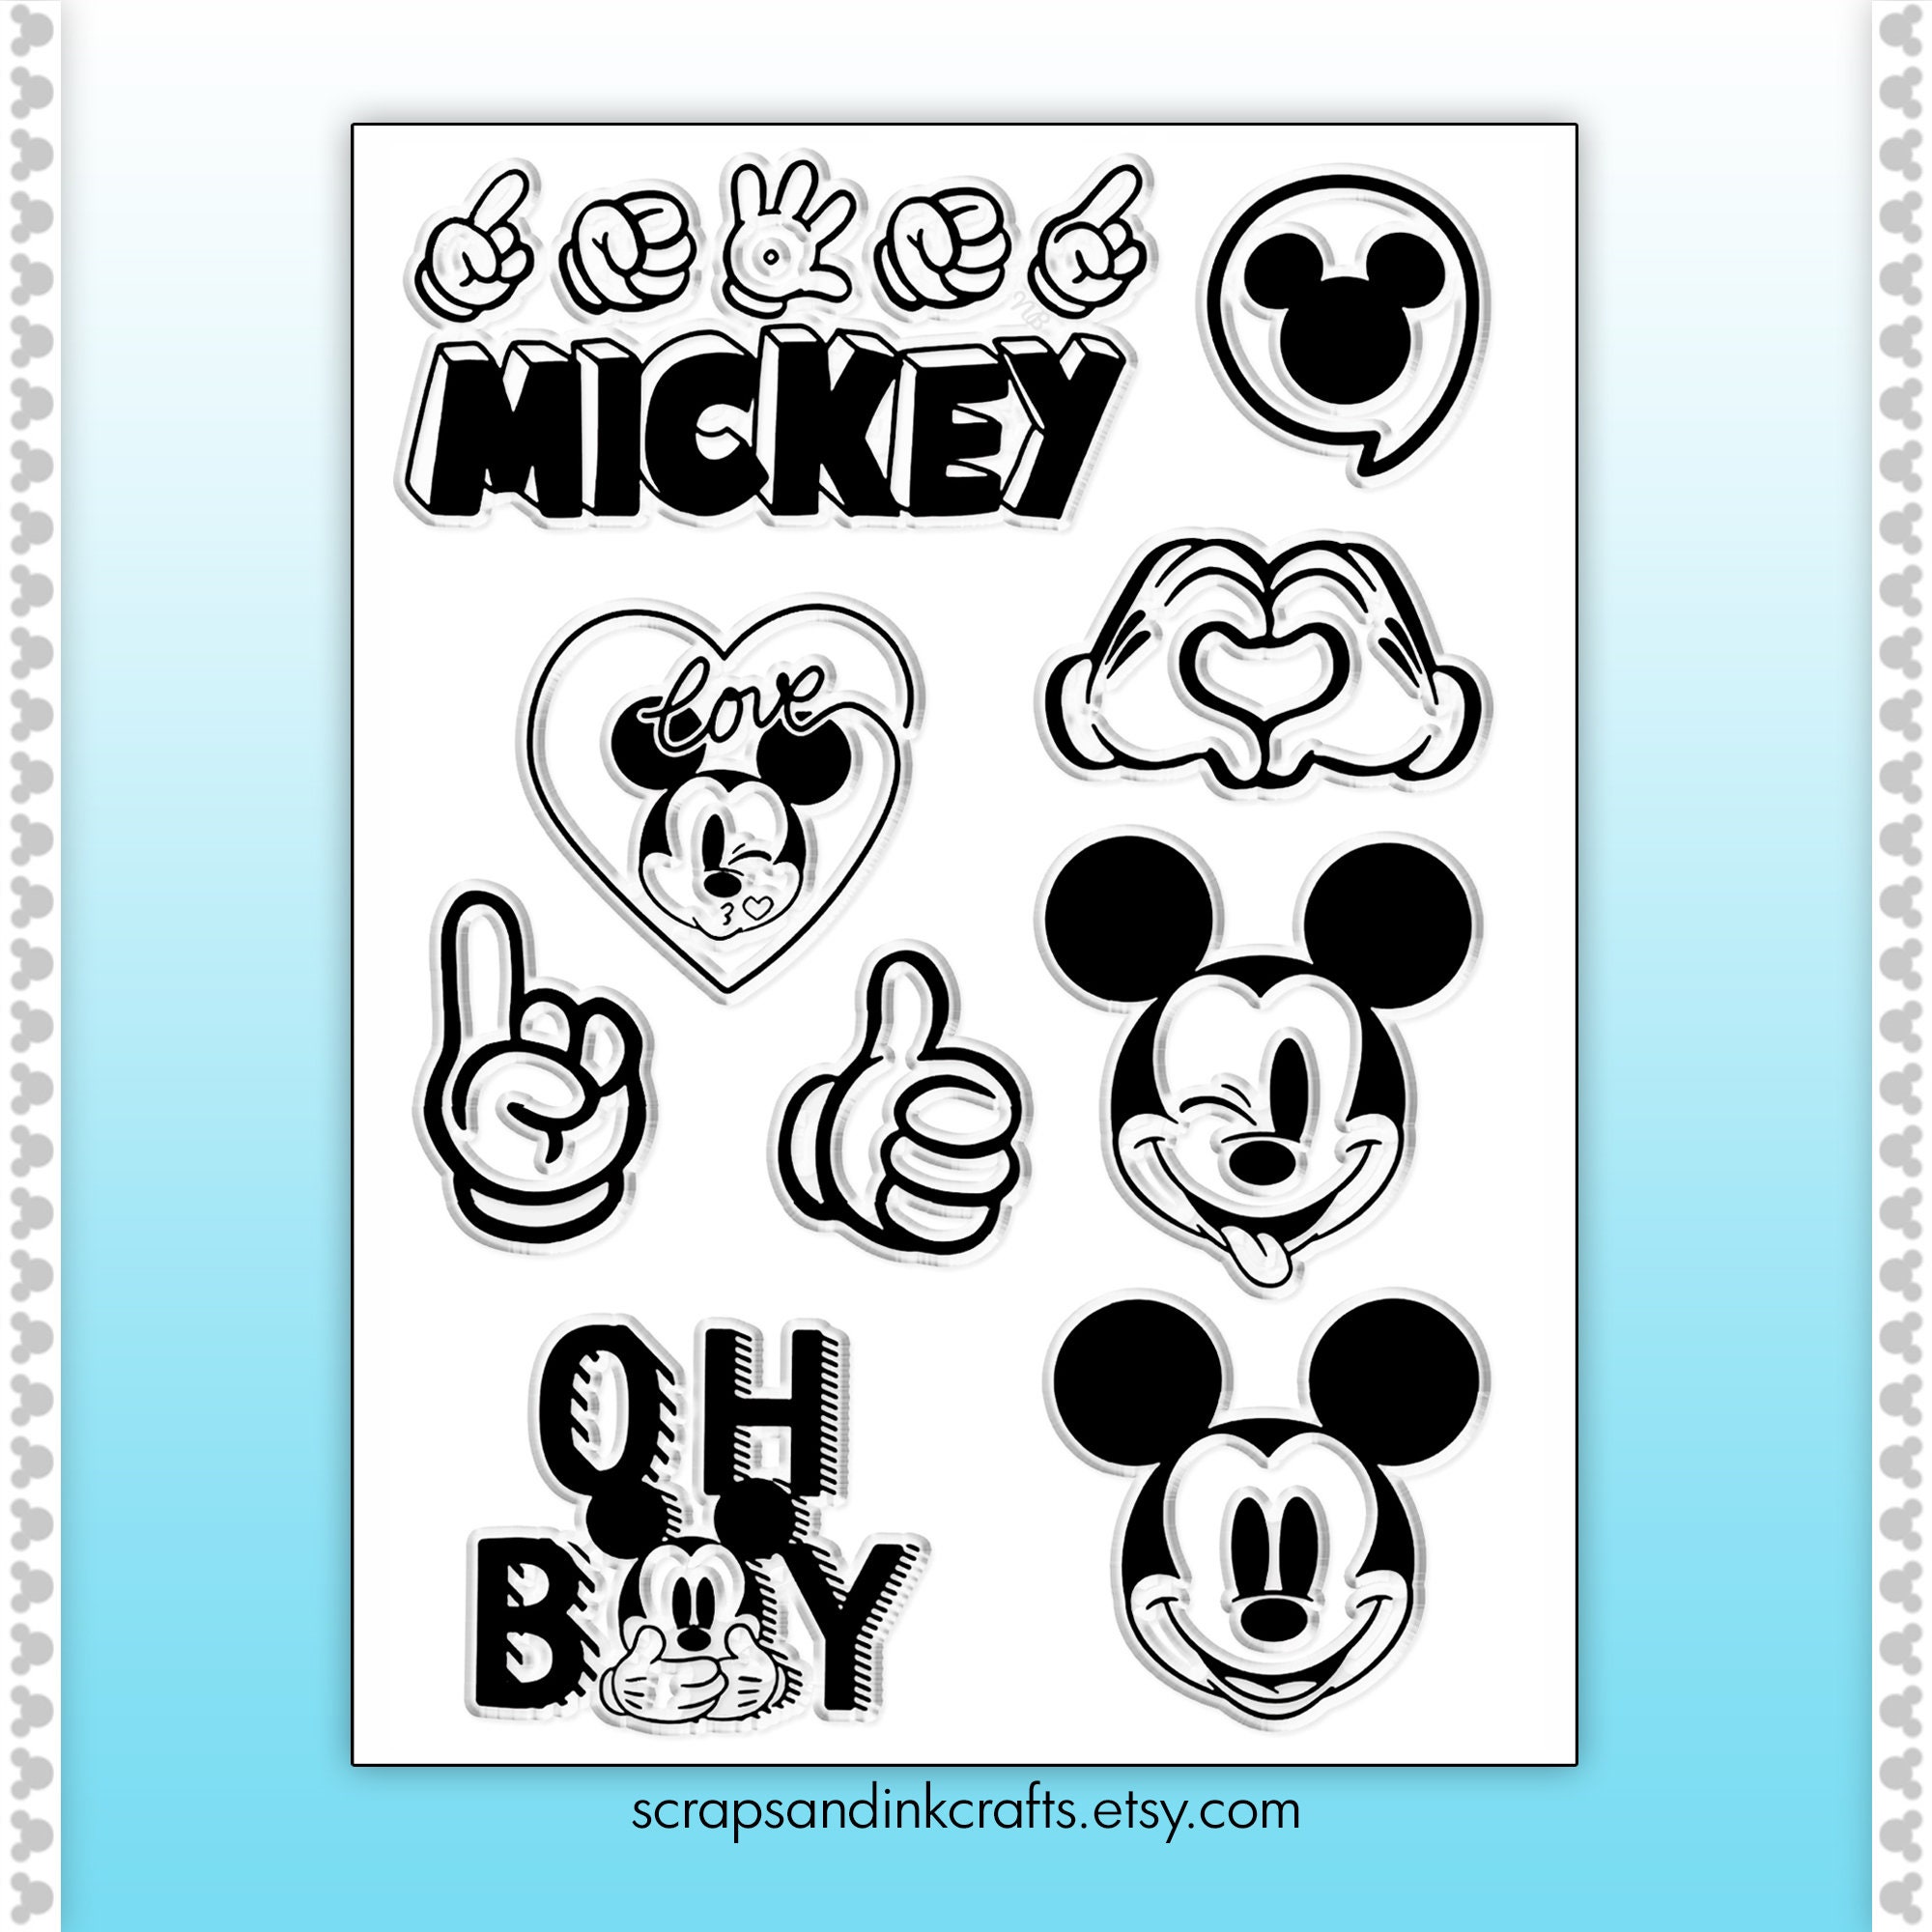 EK Disney Clear Stamps-Mickey